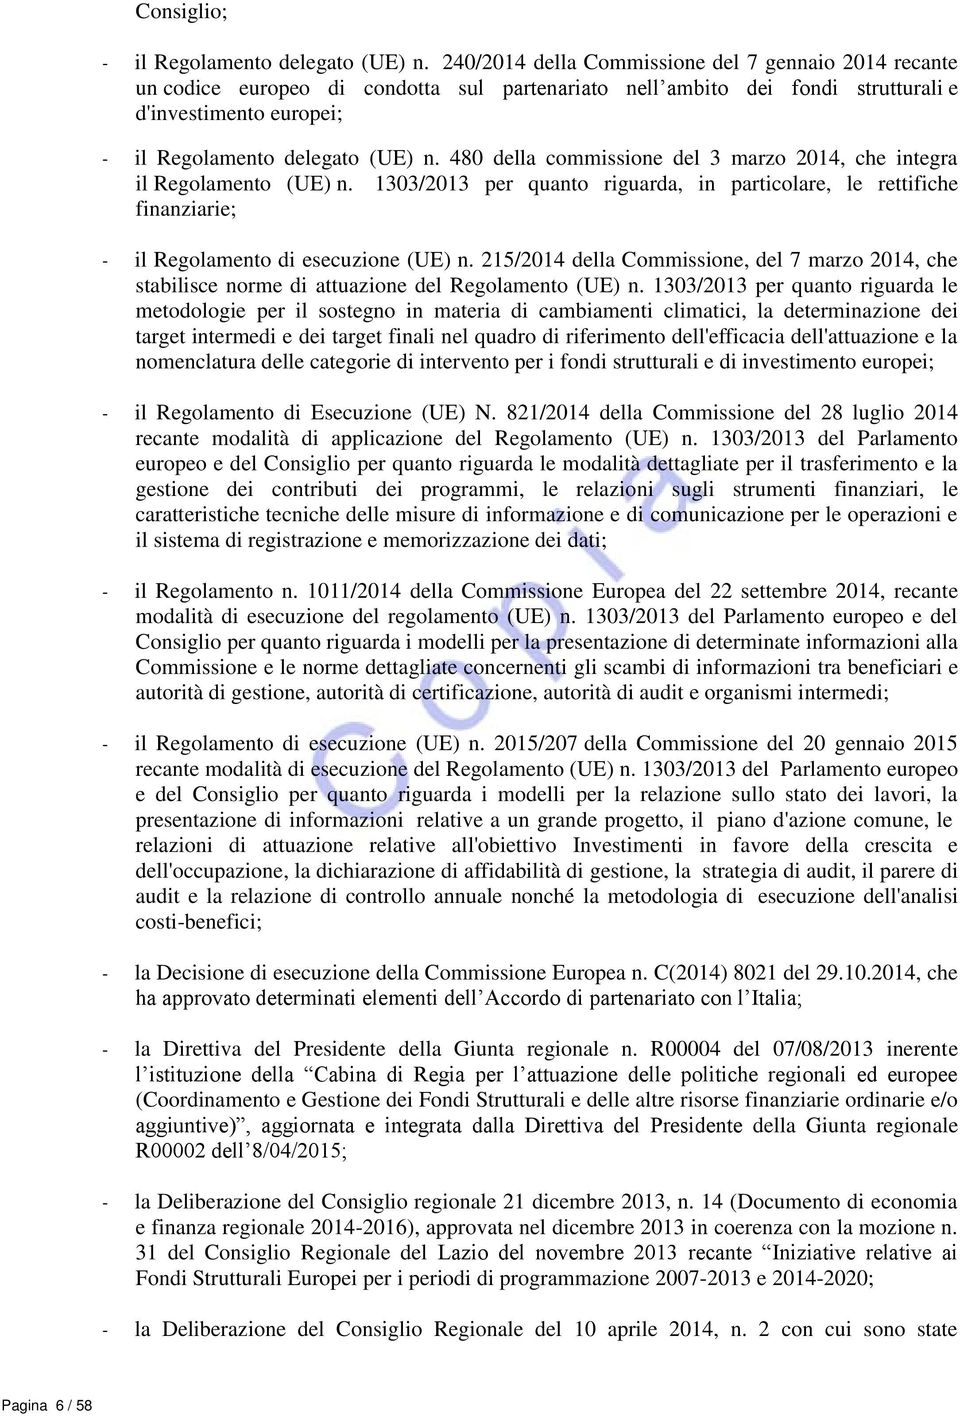 480 della commissione del 3 marzo 2014, che integra il Regolamento (UE) n. 1303/2013 per quanto riguarda, in particolare, le rettifiche finanziarie; - il Regolamento di esecuzione (UE) n.